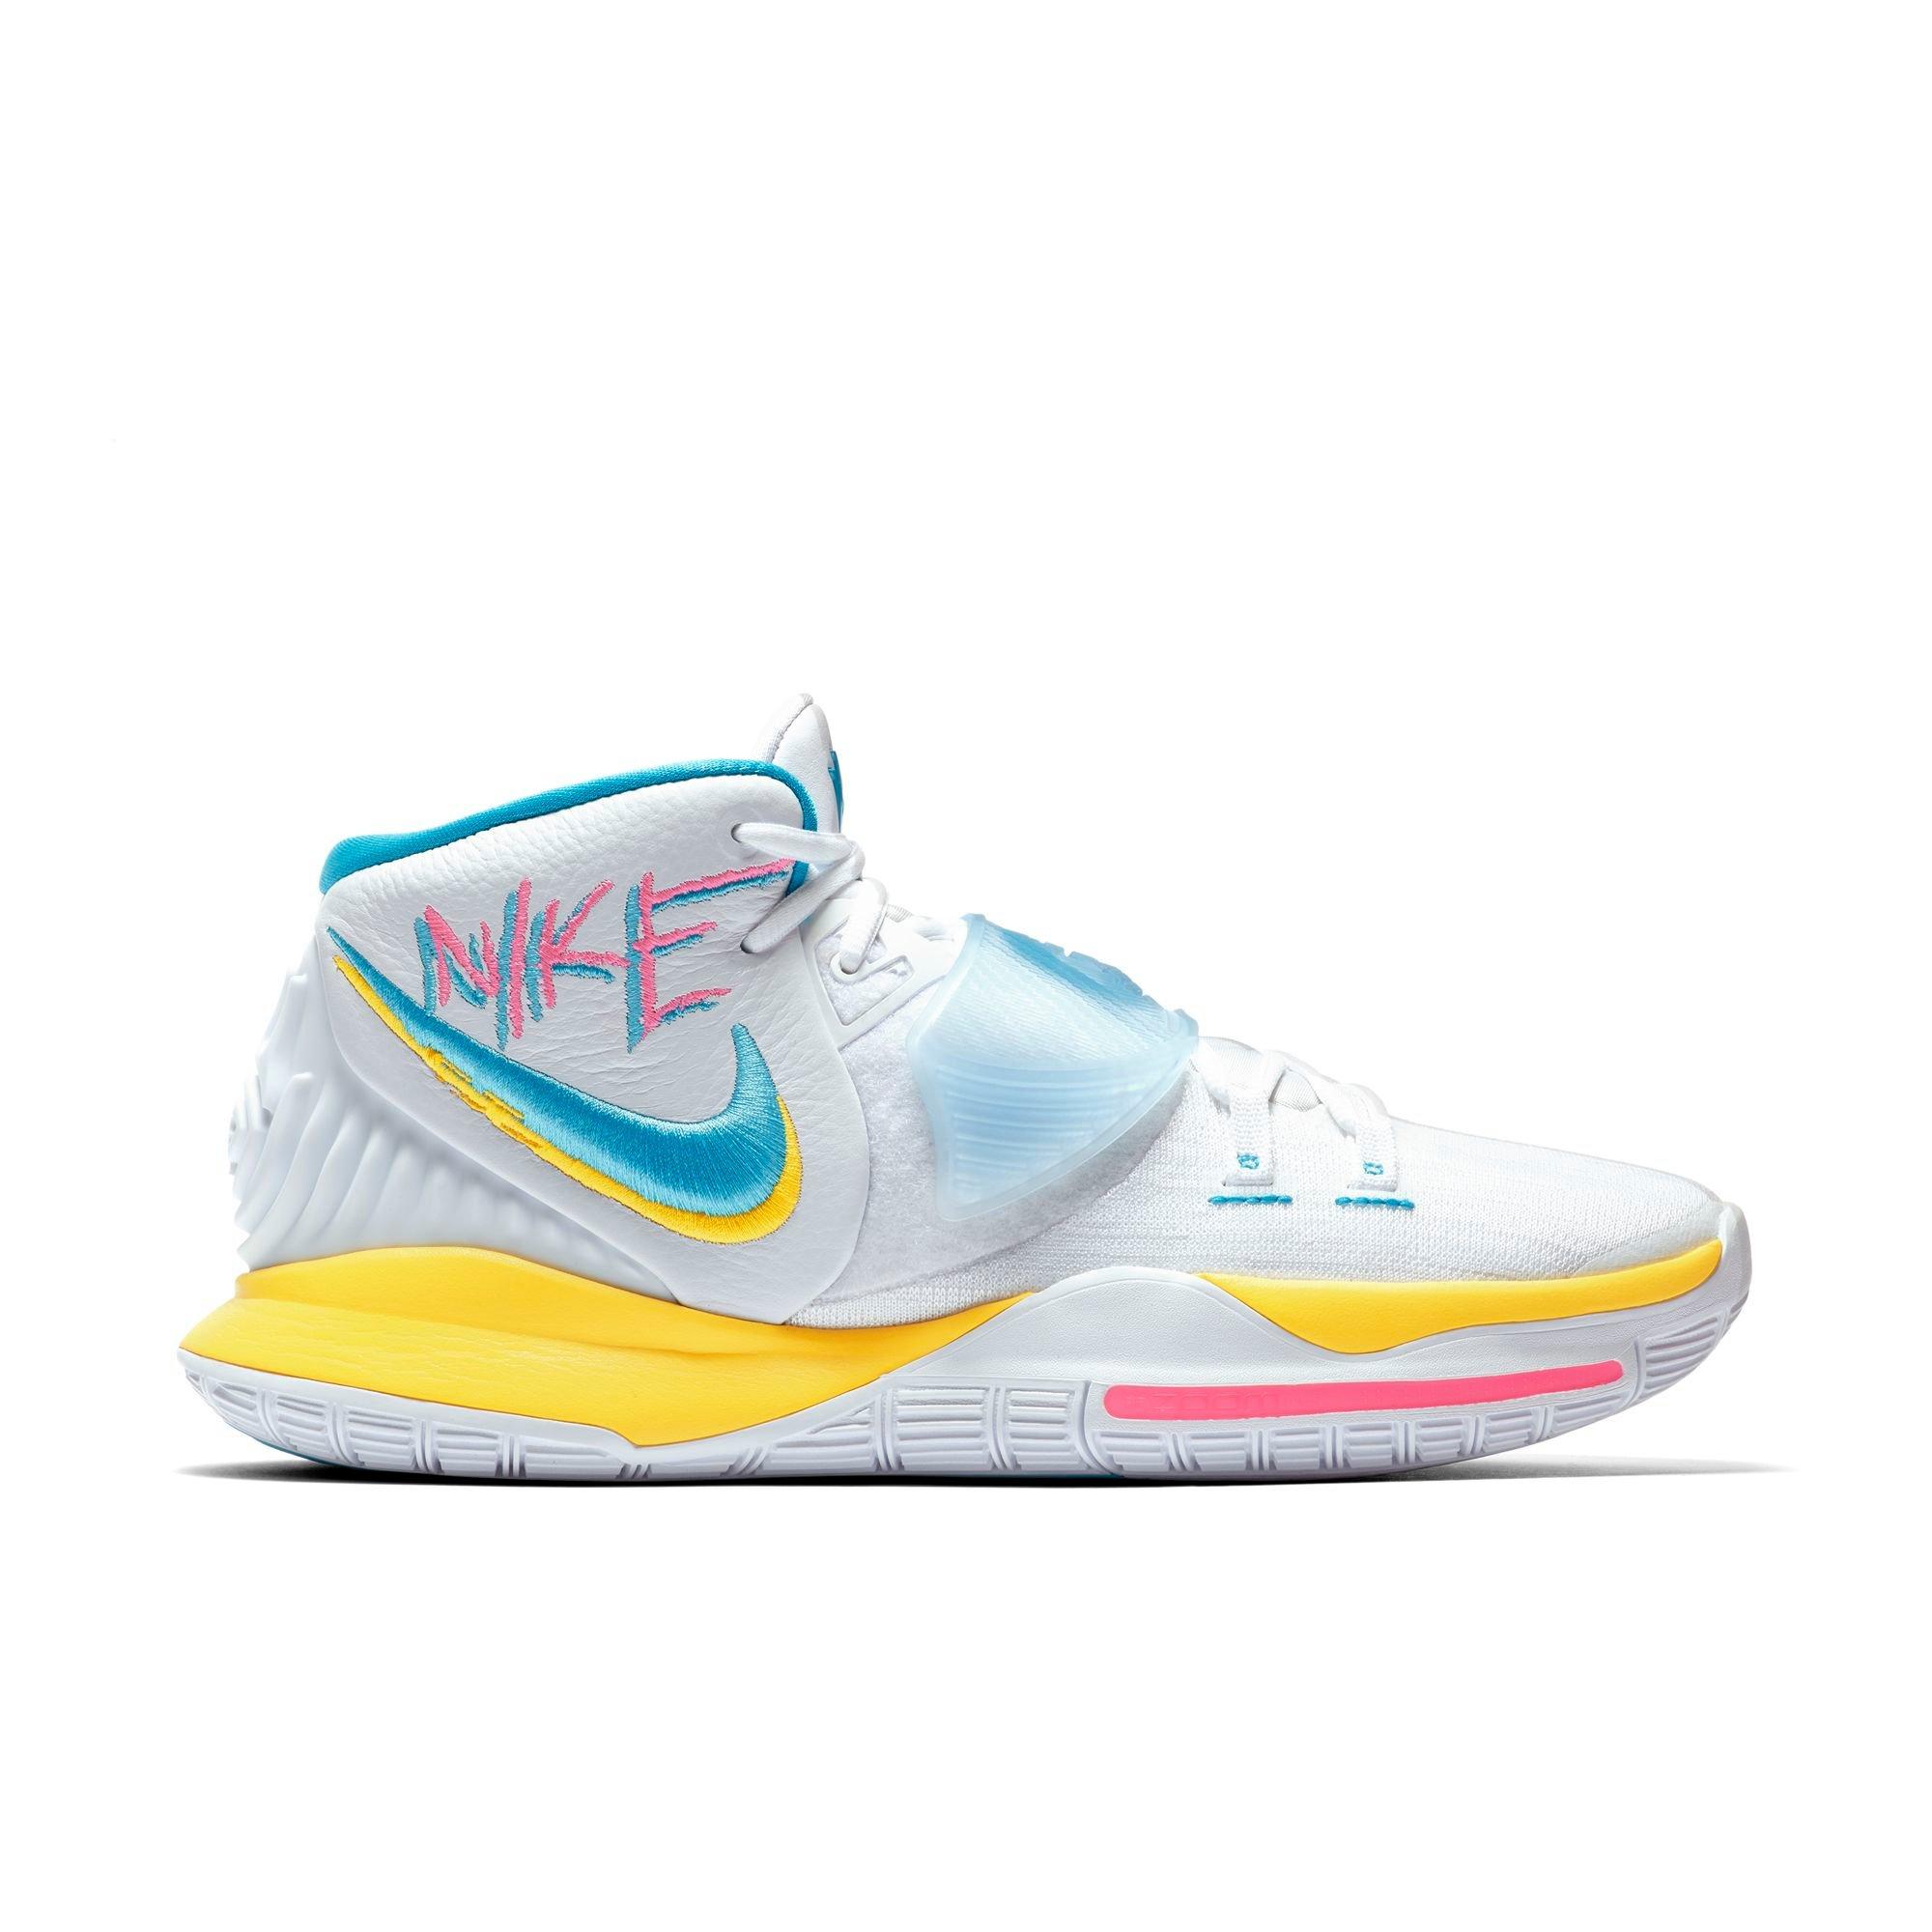 Kyrie 6 Big Kids 'Basketball Shoe. Nike.com